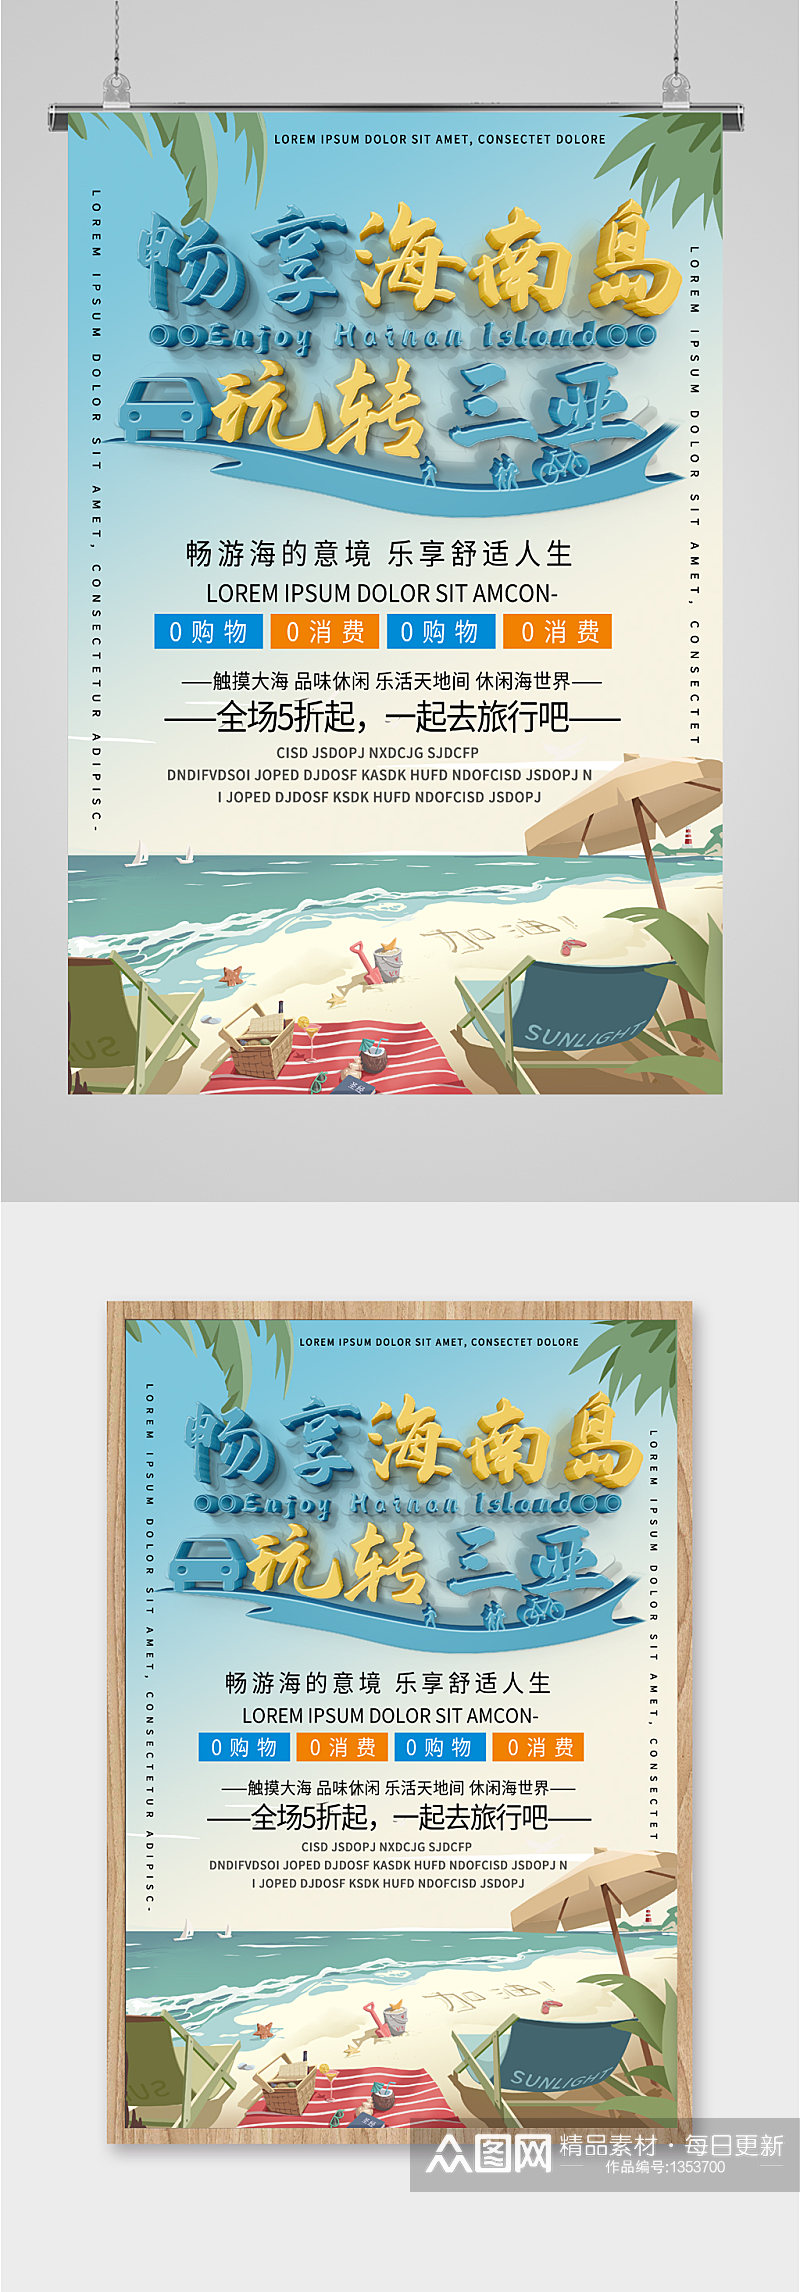 海南岛旅游宣传海报素材